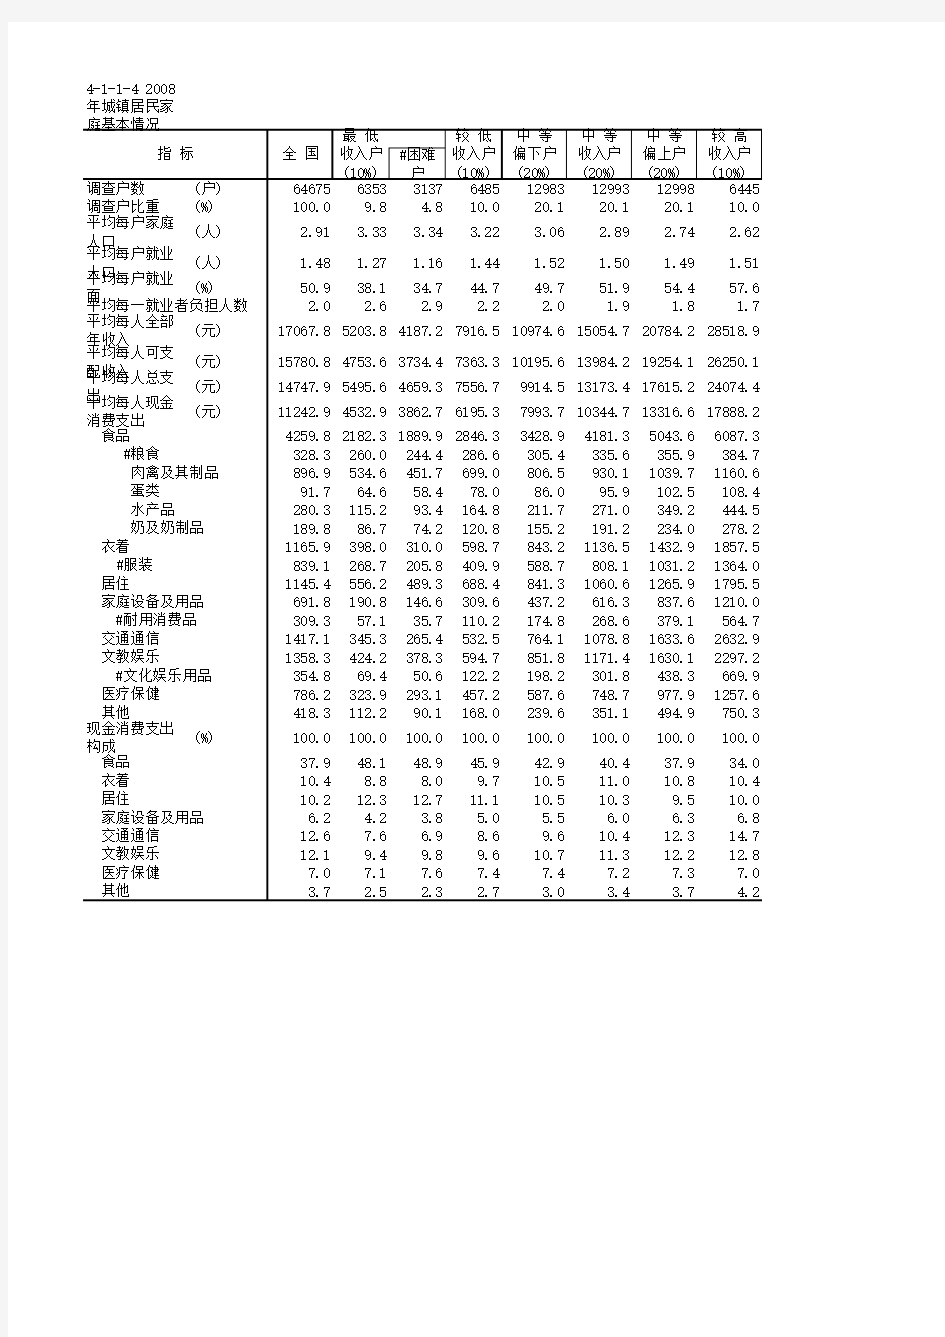 中国住户调查年鉴全国各省市区统计数据：4-1-1-4 2008年城镇居民家庭基本情况